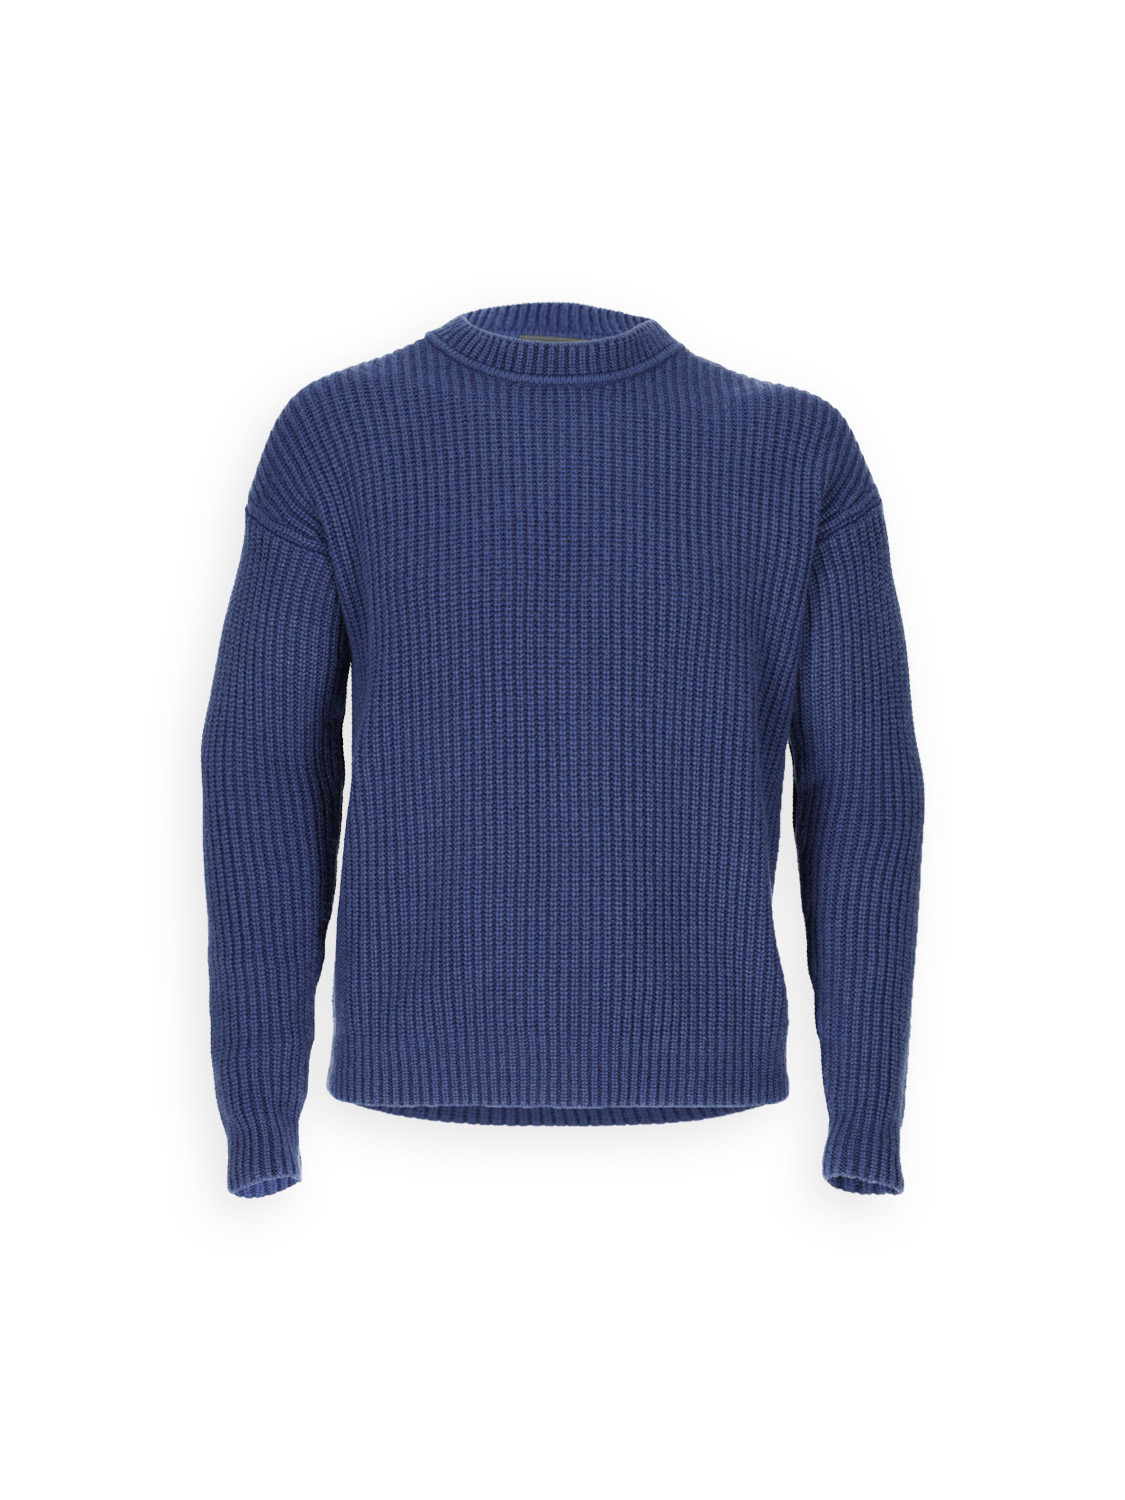 Iris von Arnim Adriano - cashmere knit sweater  blue M